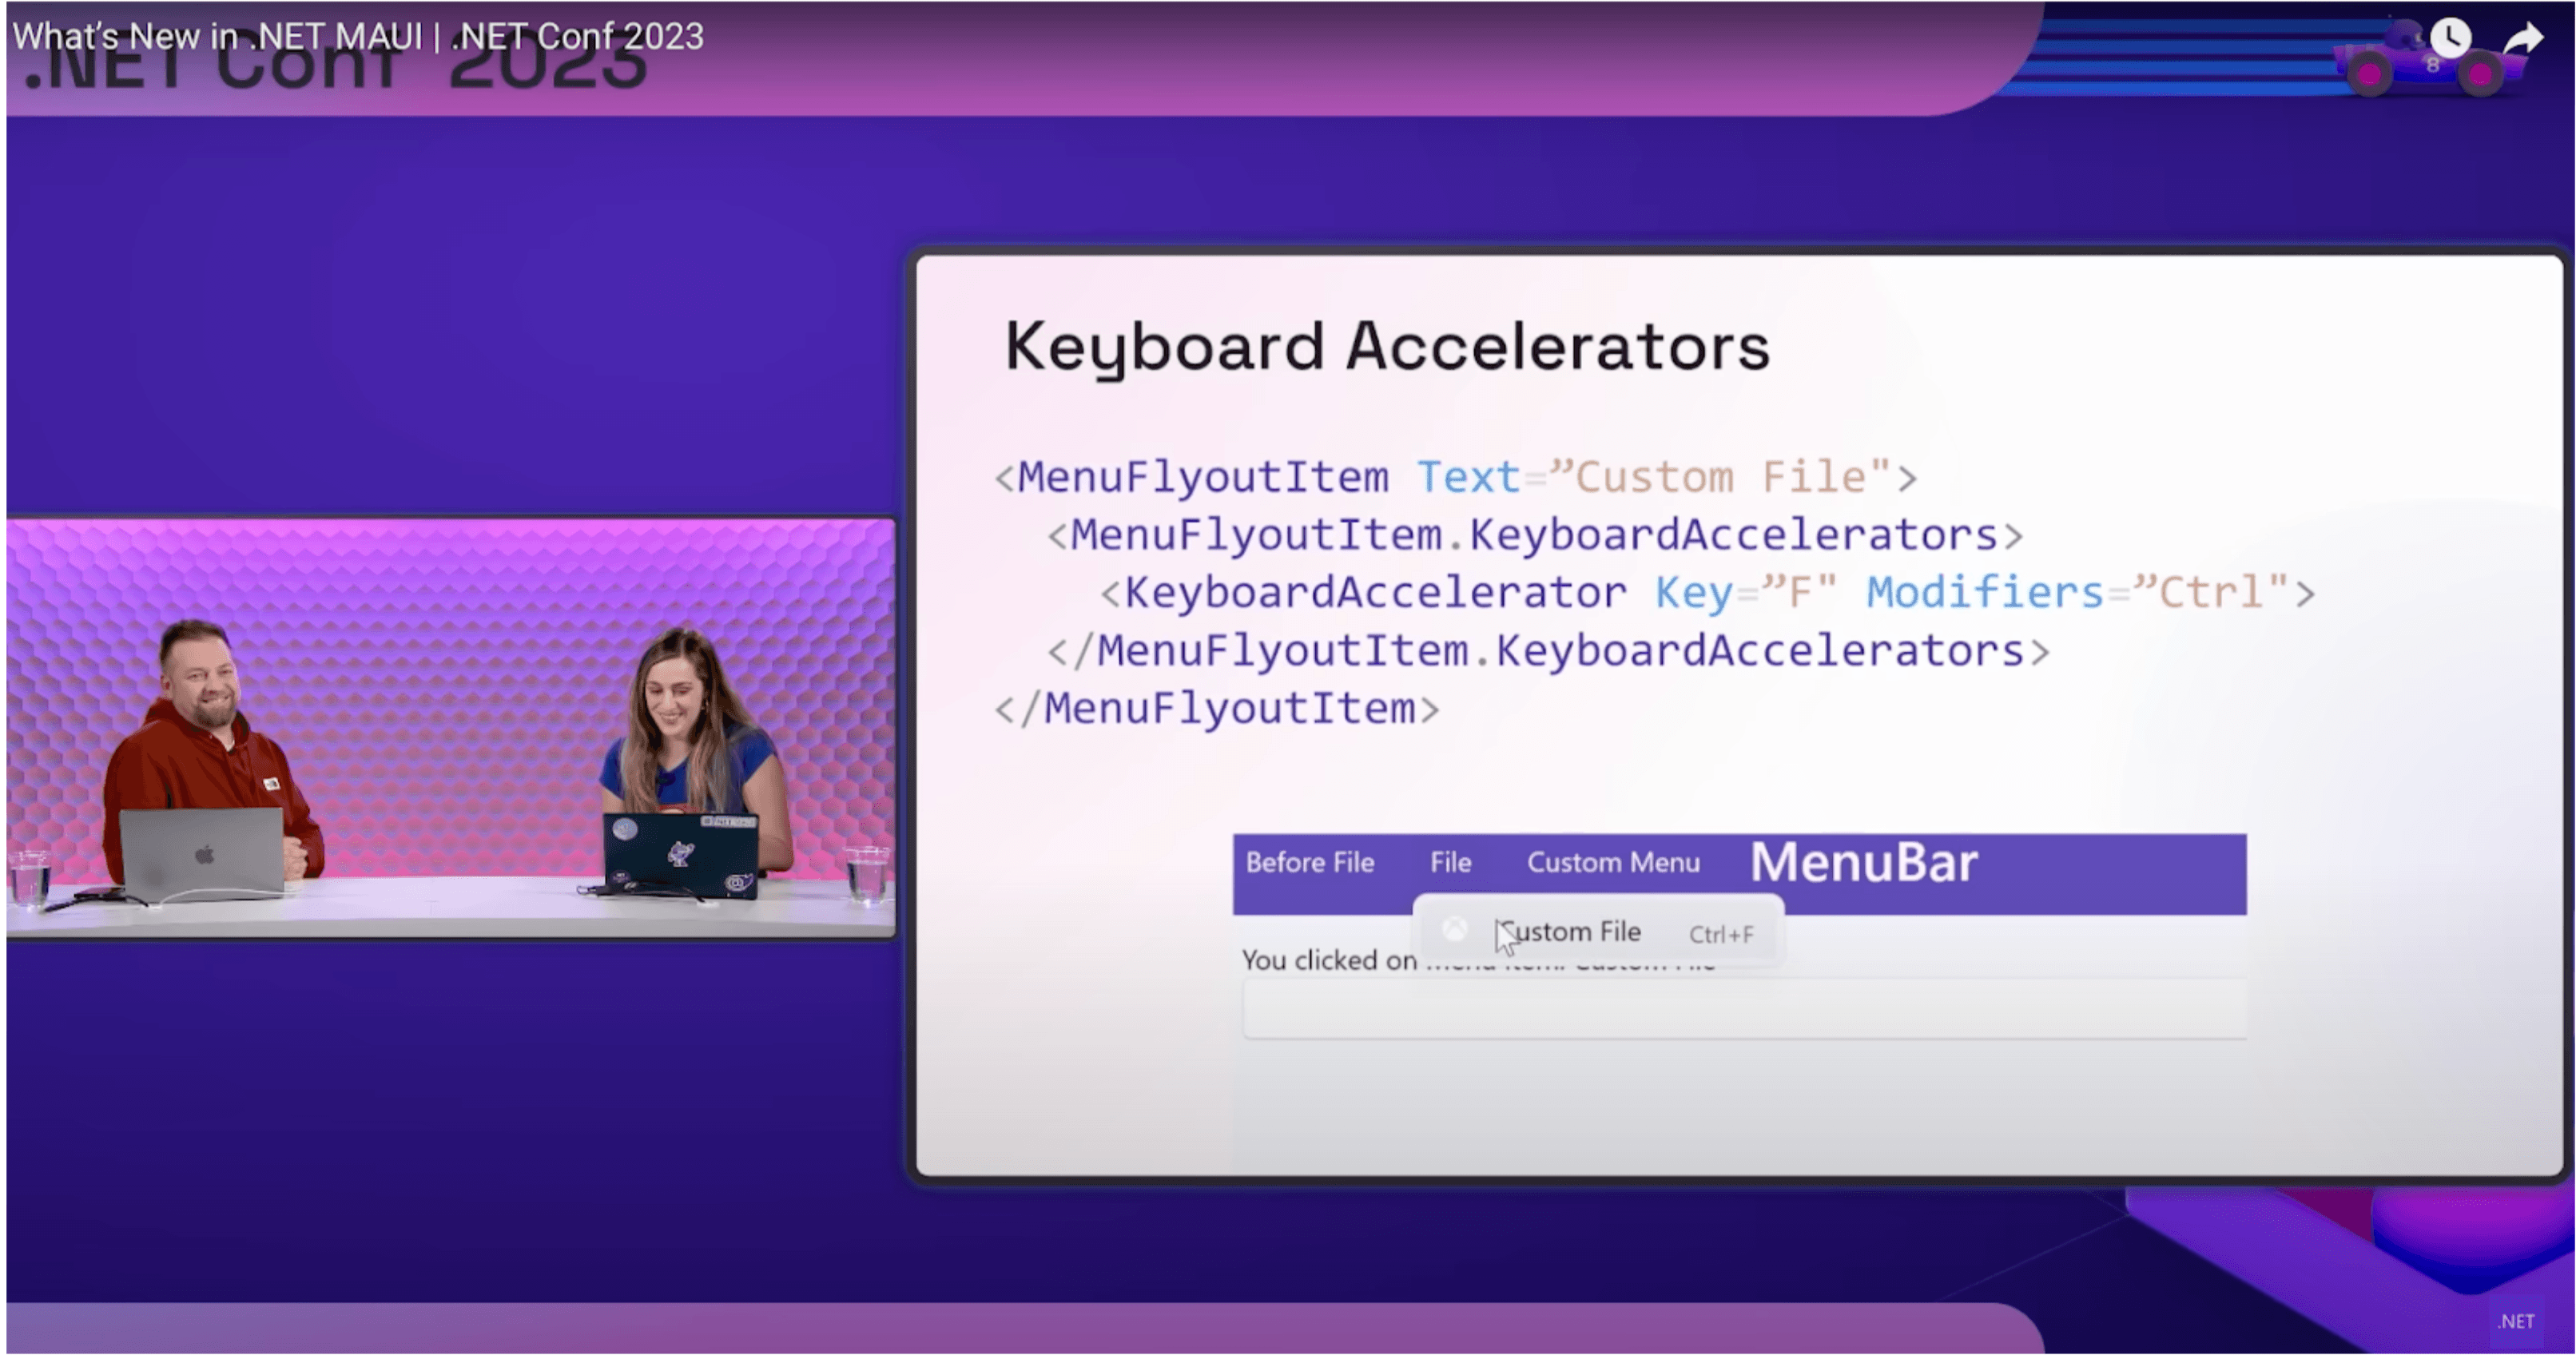 Keyboard accelerators